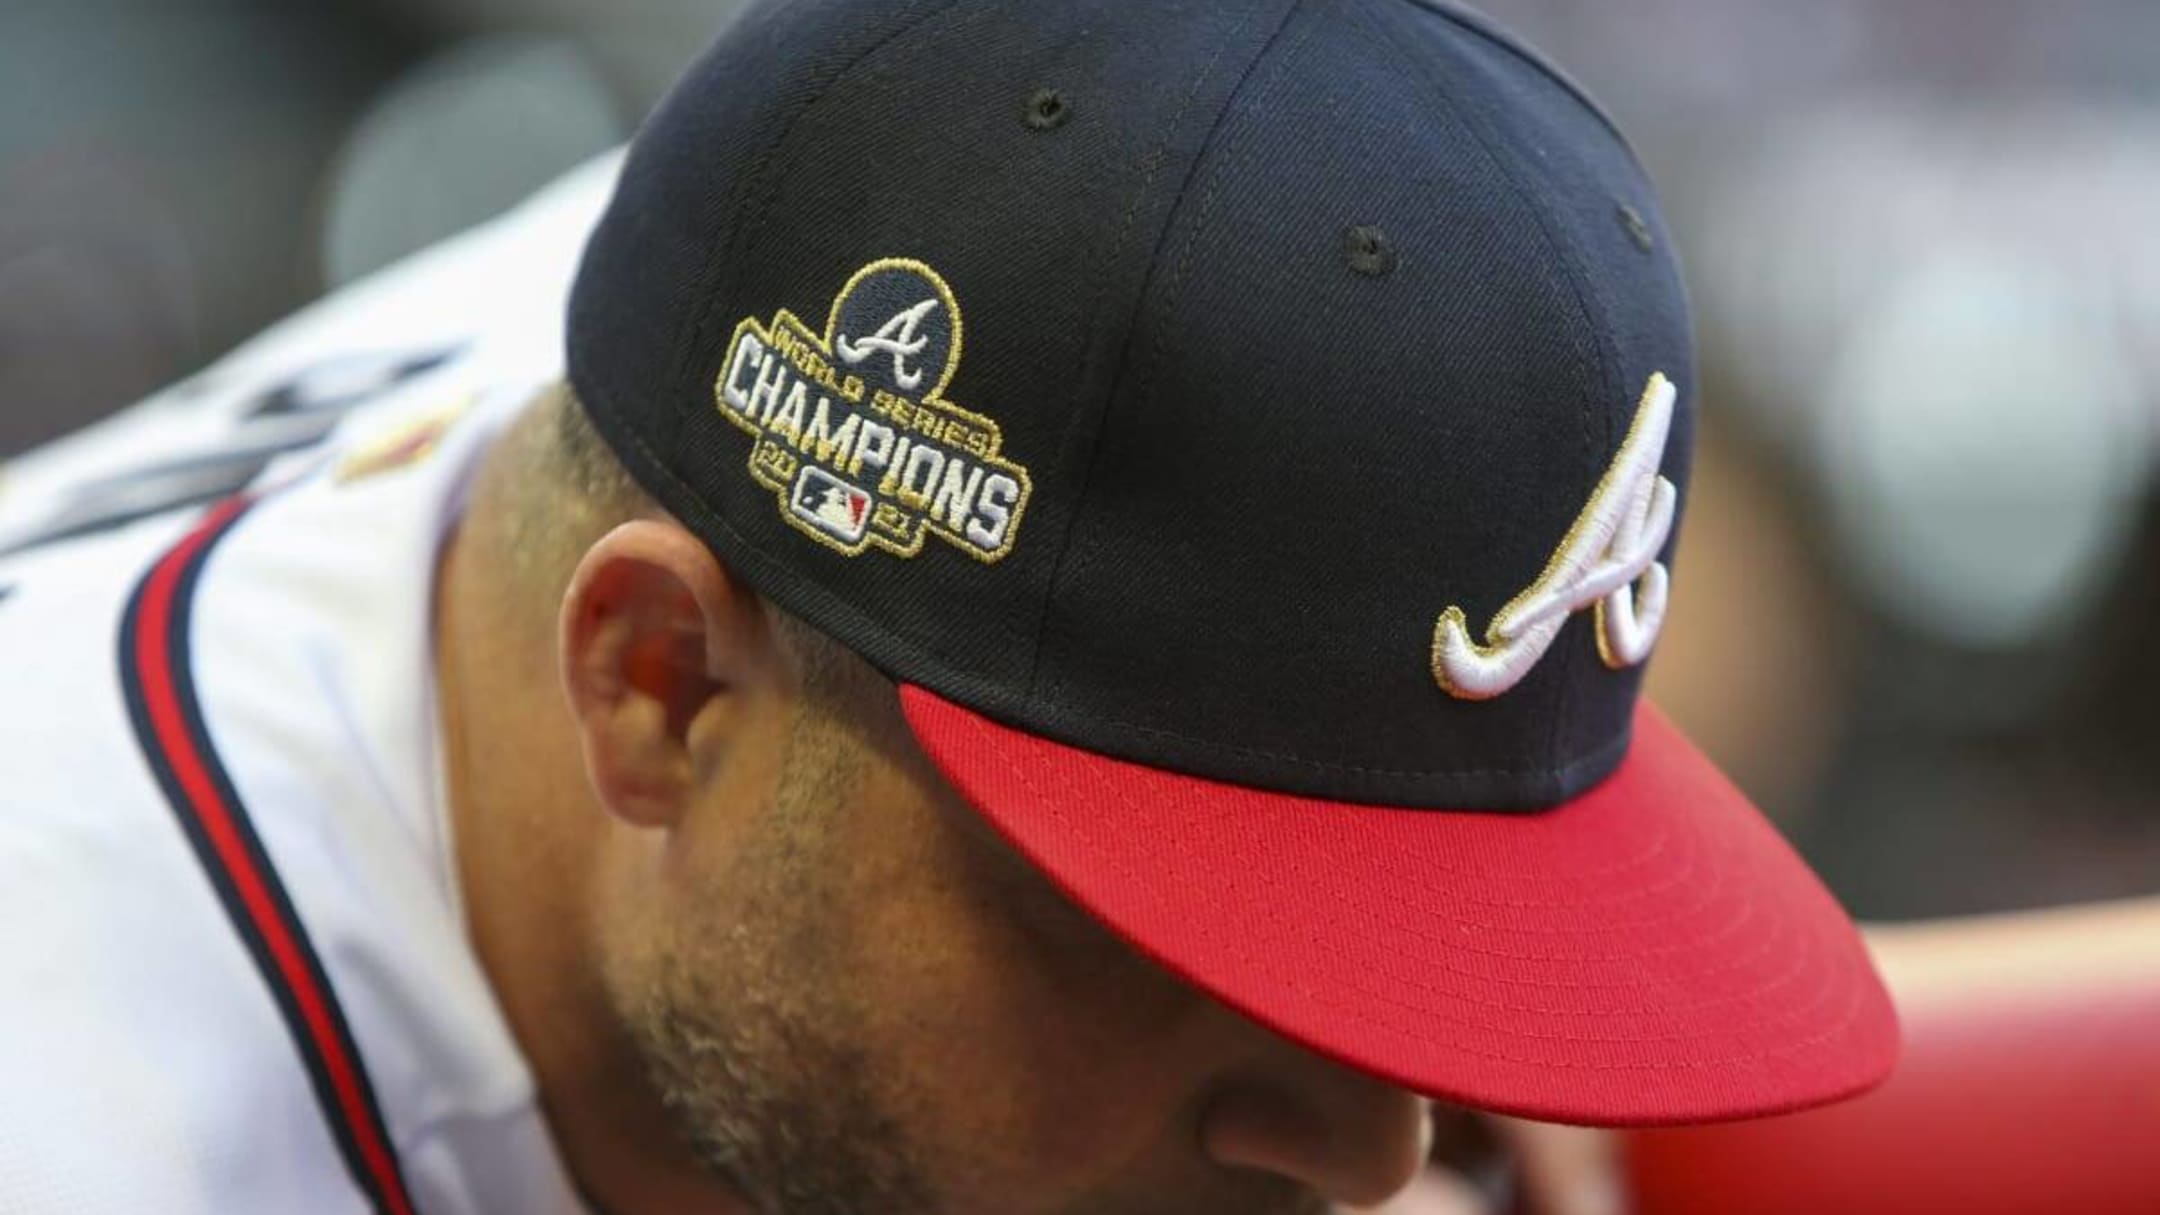 Atlanta Braves 'Big Hat' Home Run Celebration Has to Go Bye-Bye